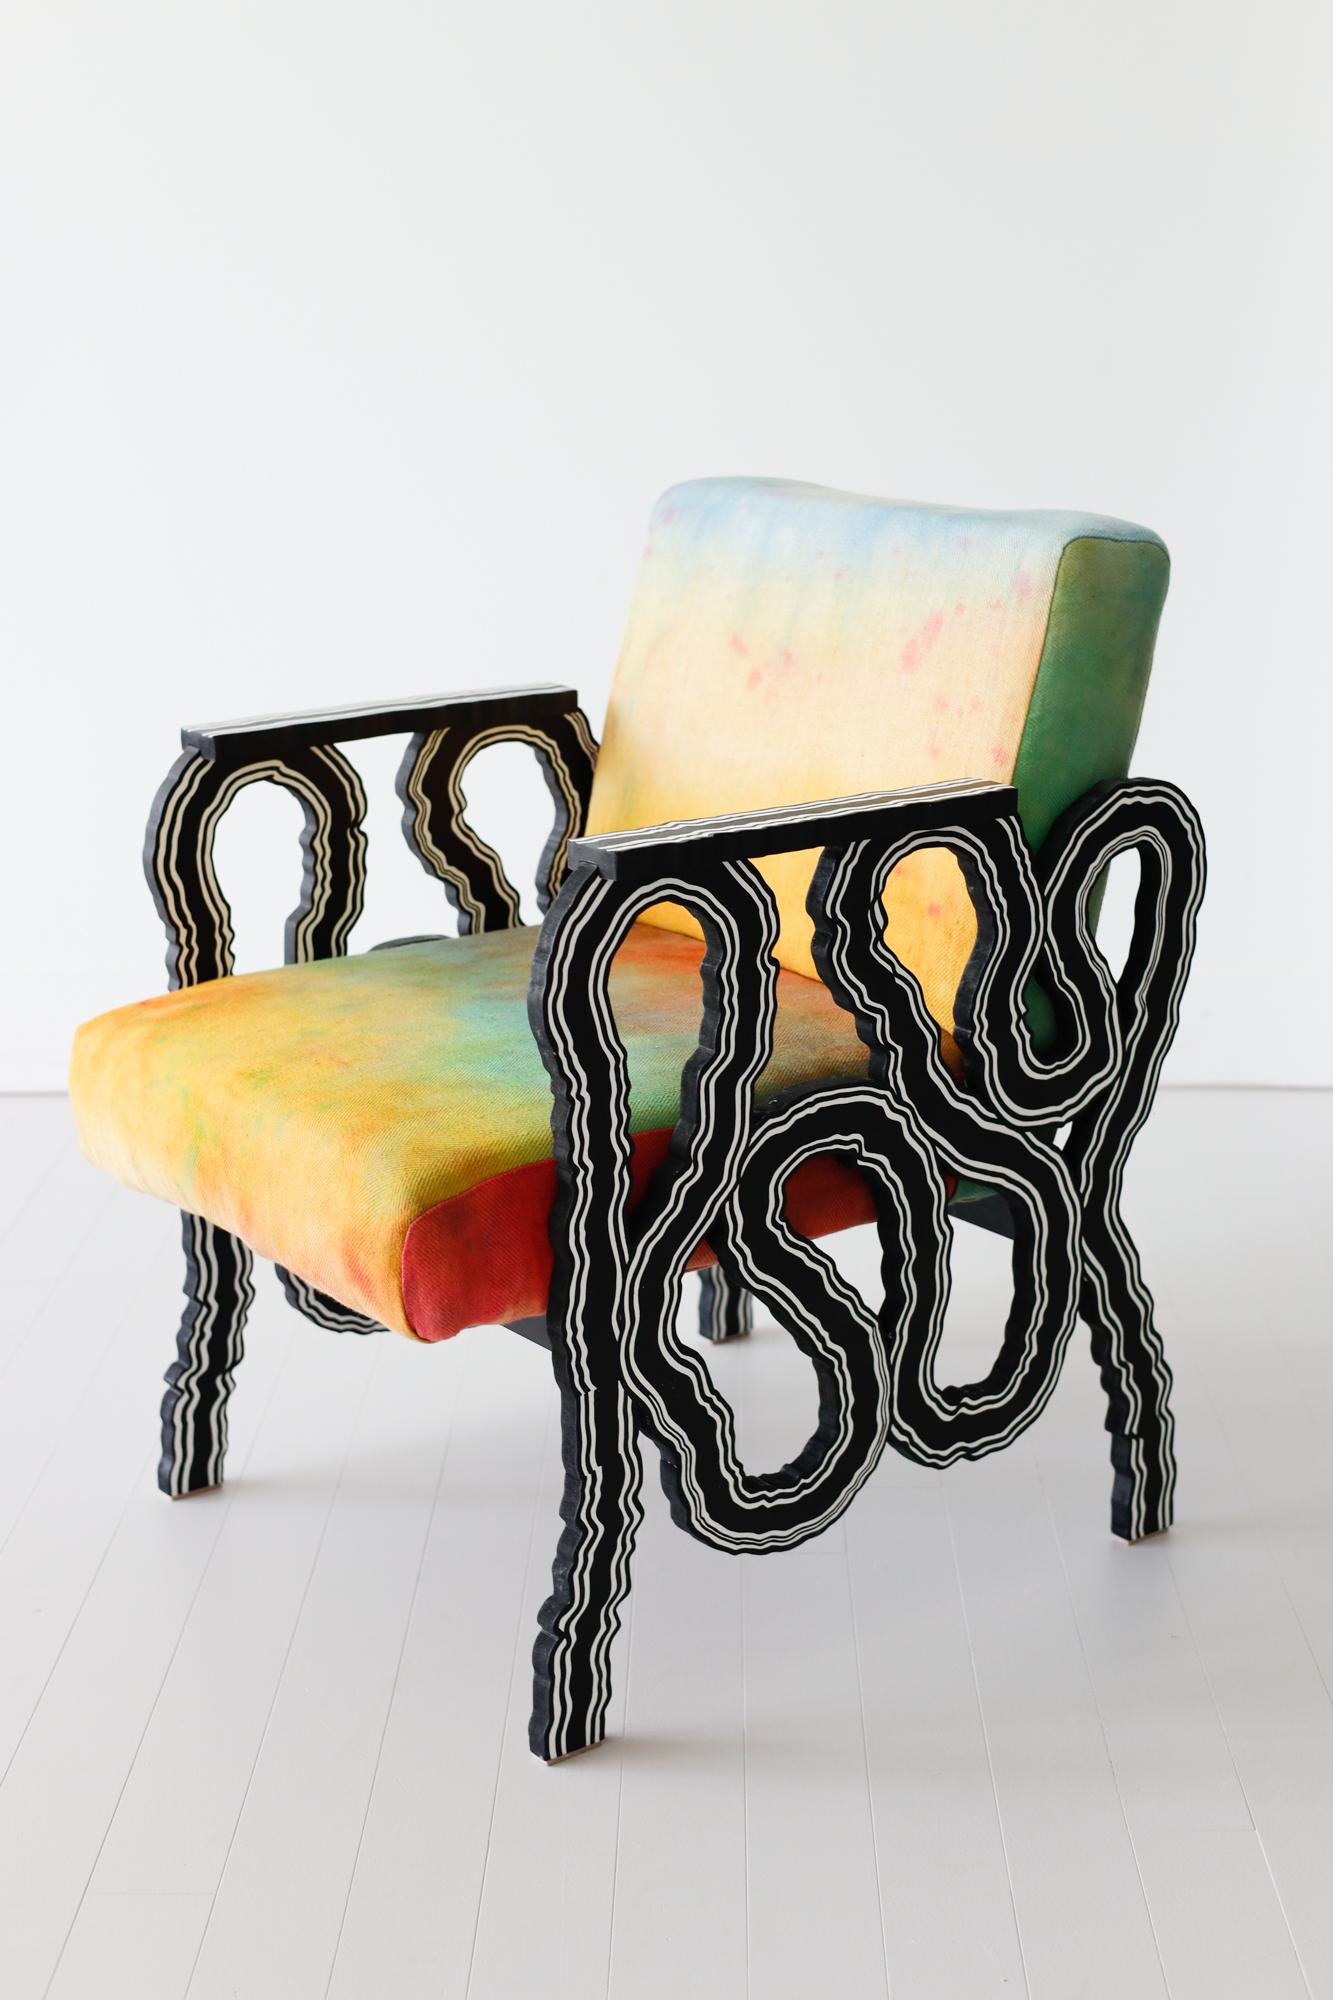 Abstrakter, dekorativer Stuhl „Mercy Seat“ – Sculpture von Jason Andrew Turner